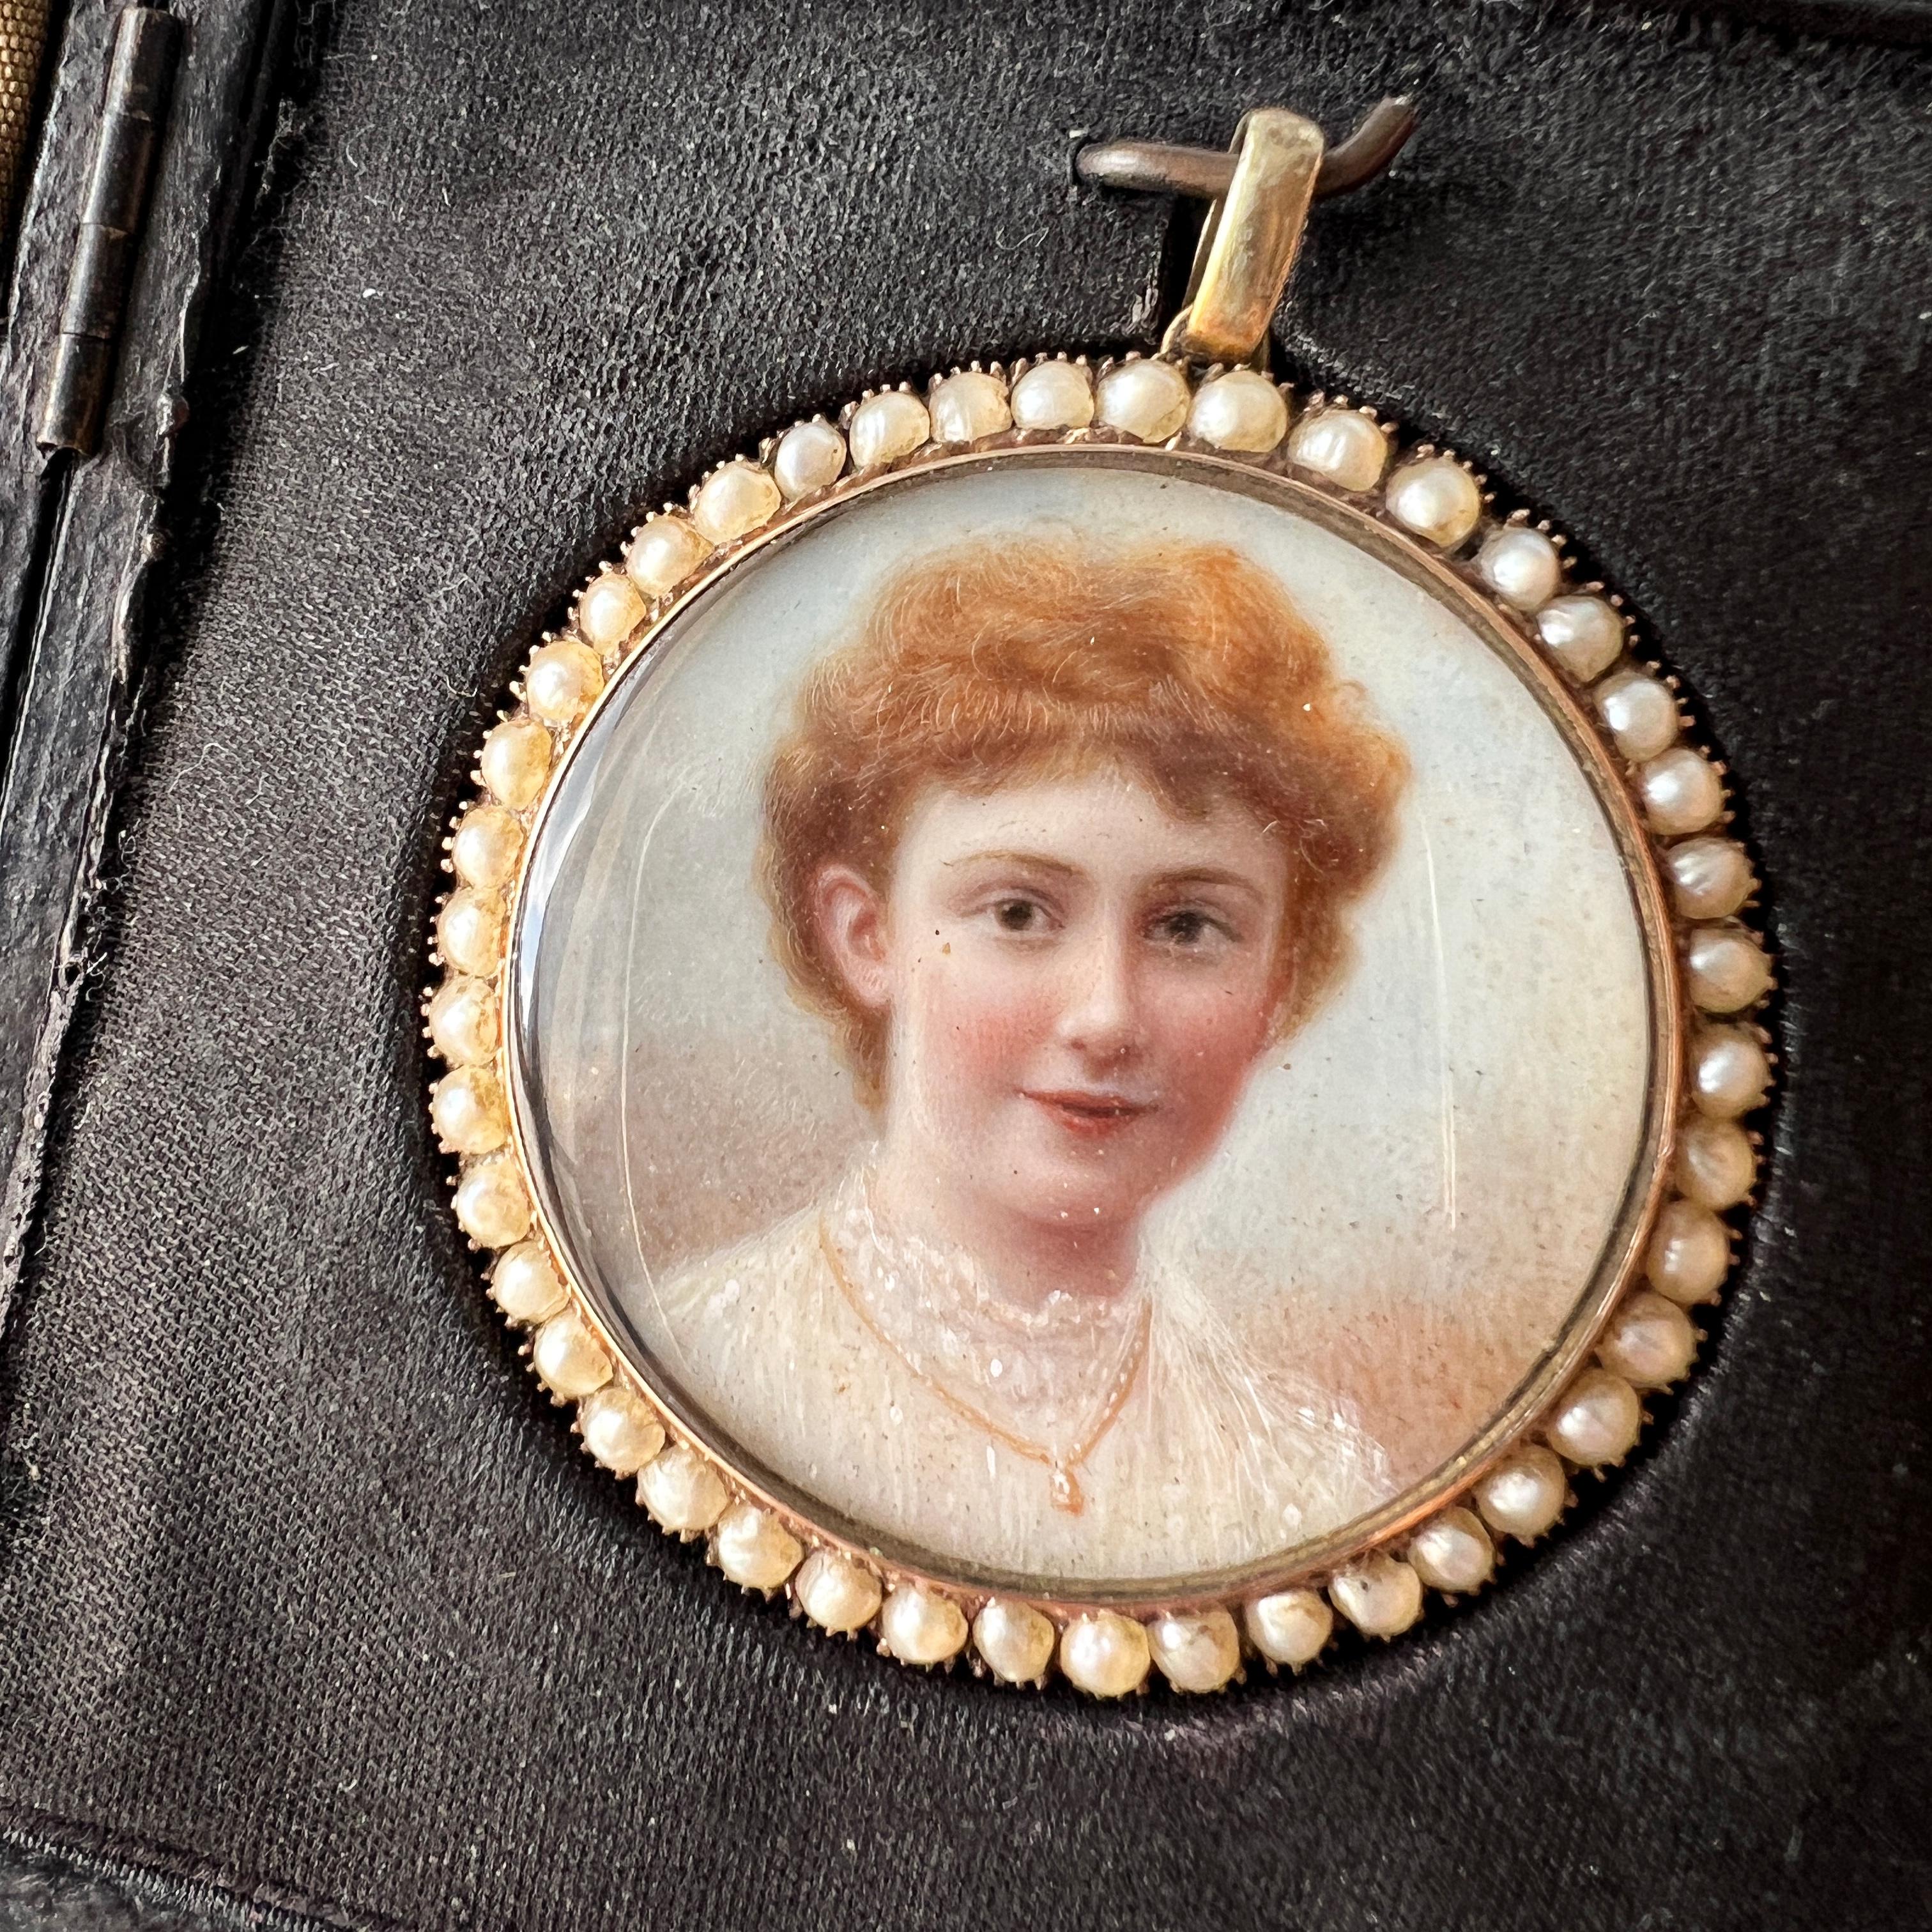 Nous vendons un rare pendentif en forme de portrait miniature, repr�ésentant une charmante jeune femme dans une robe en dentelle blanche. Le pendentif a été fabriqué au cours du XIXe siècle, à l'époque victorienne, et il s'agit très probablement